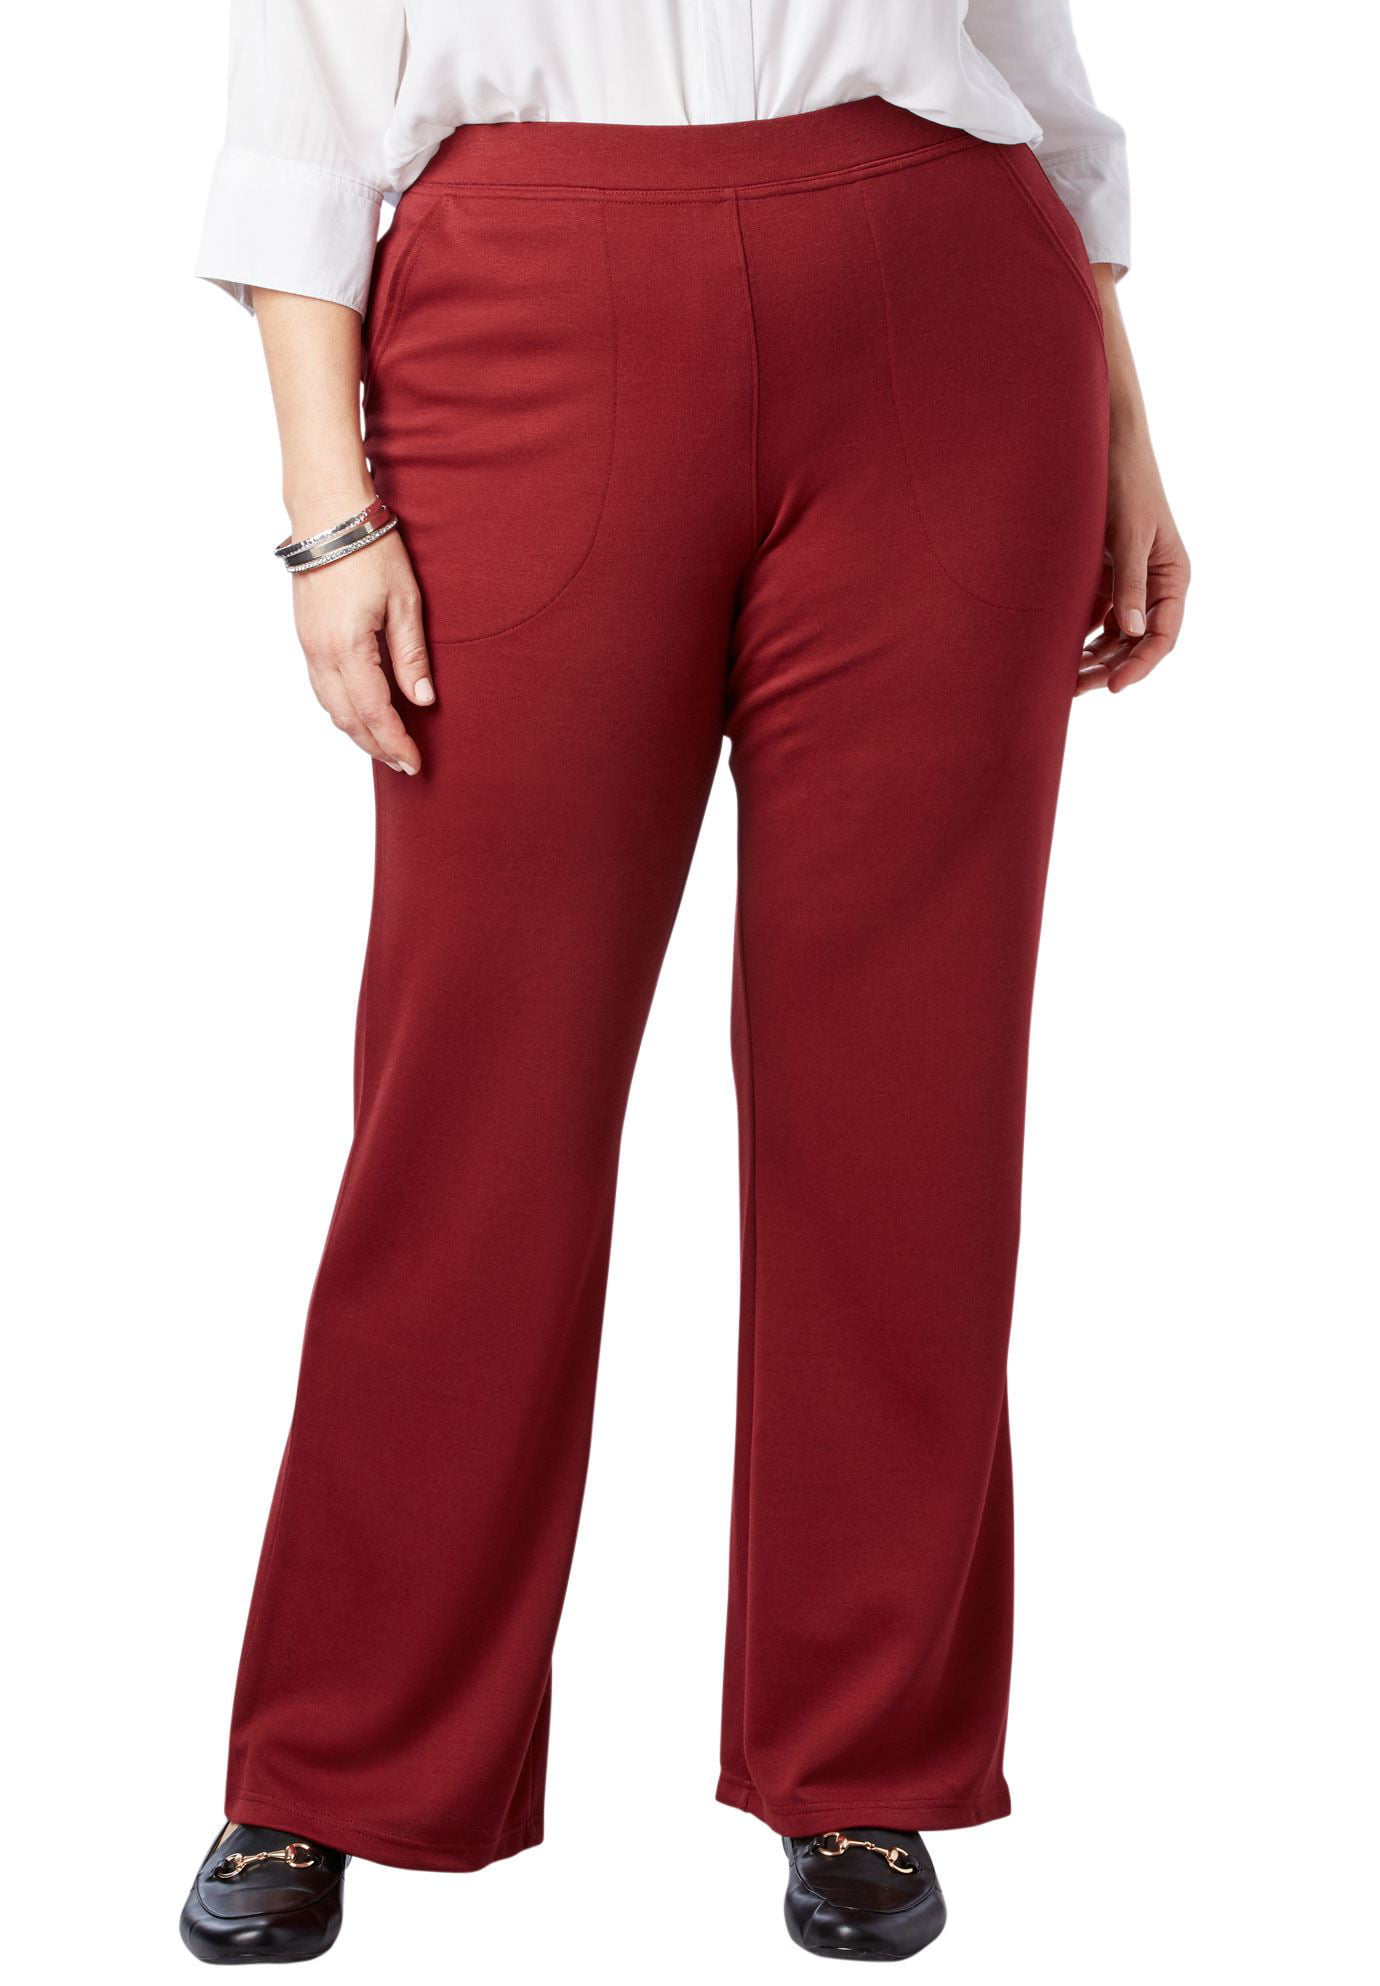 Woman Within Plus Size Wide Leg Ponte Knit Pant - Walmart.com